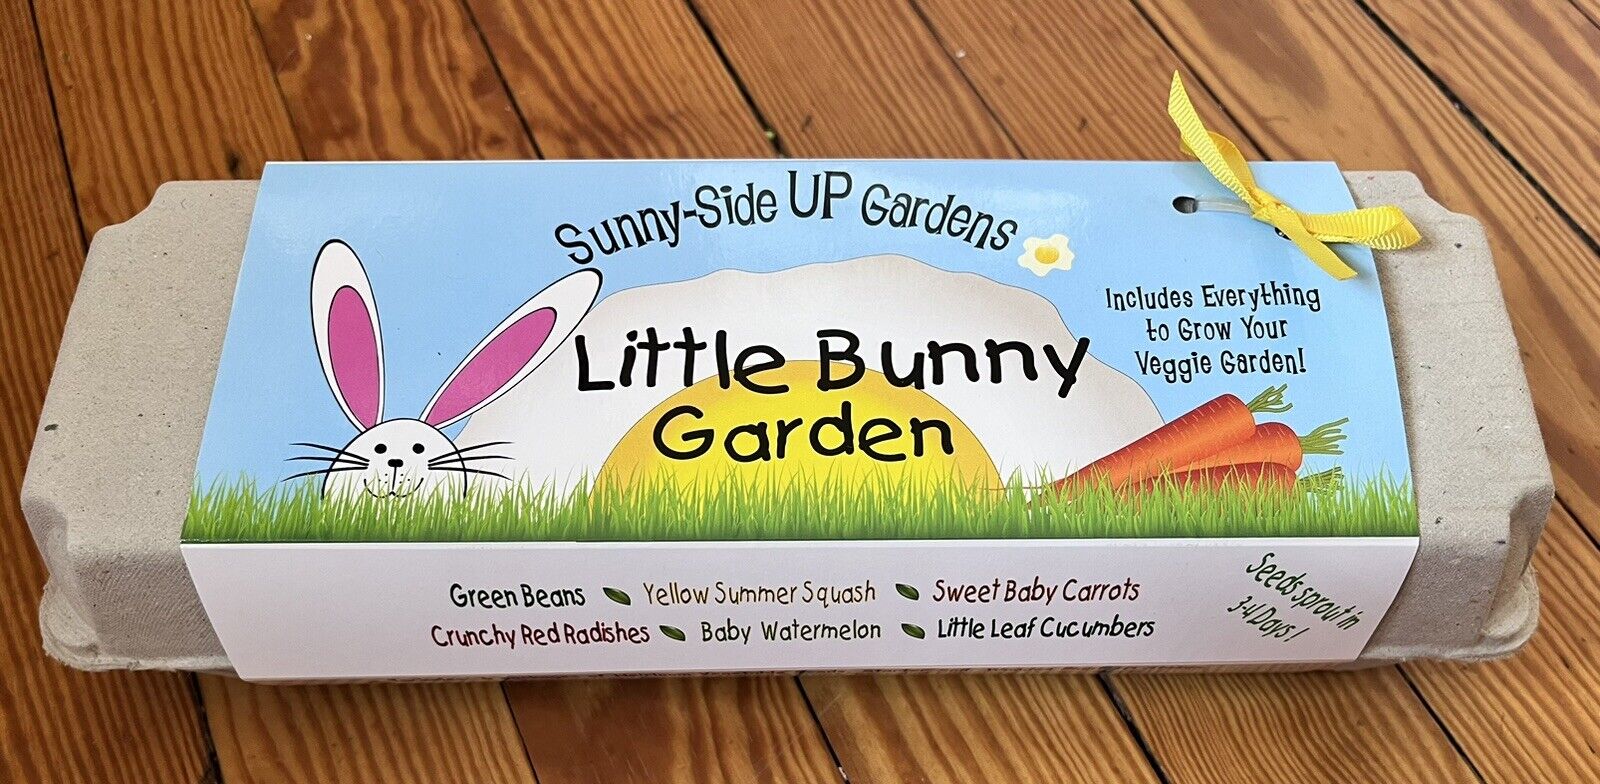 Backyard Safari Company Sunny-Side Up Gardens, Little Bunny Garden